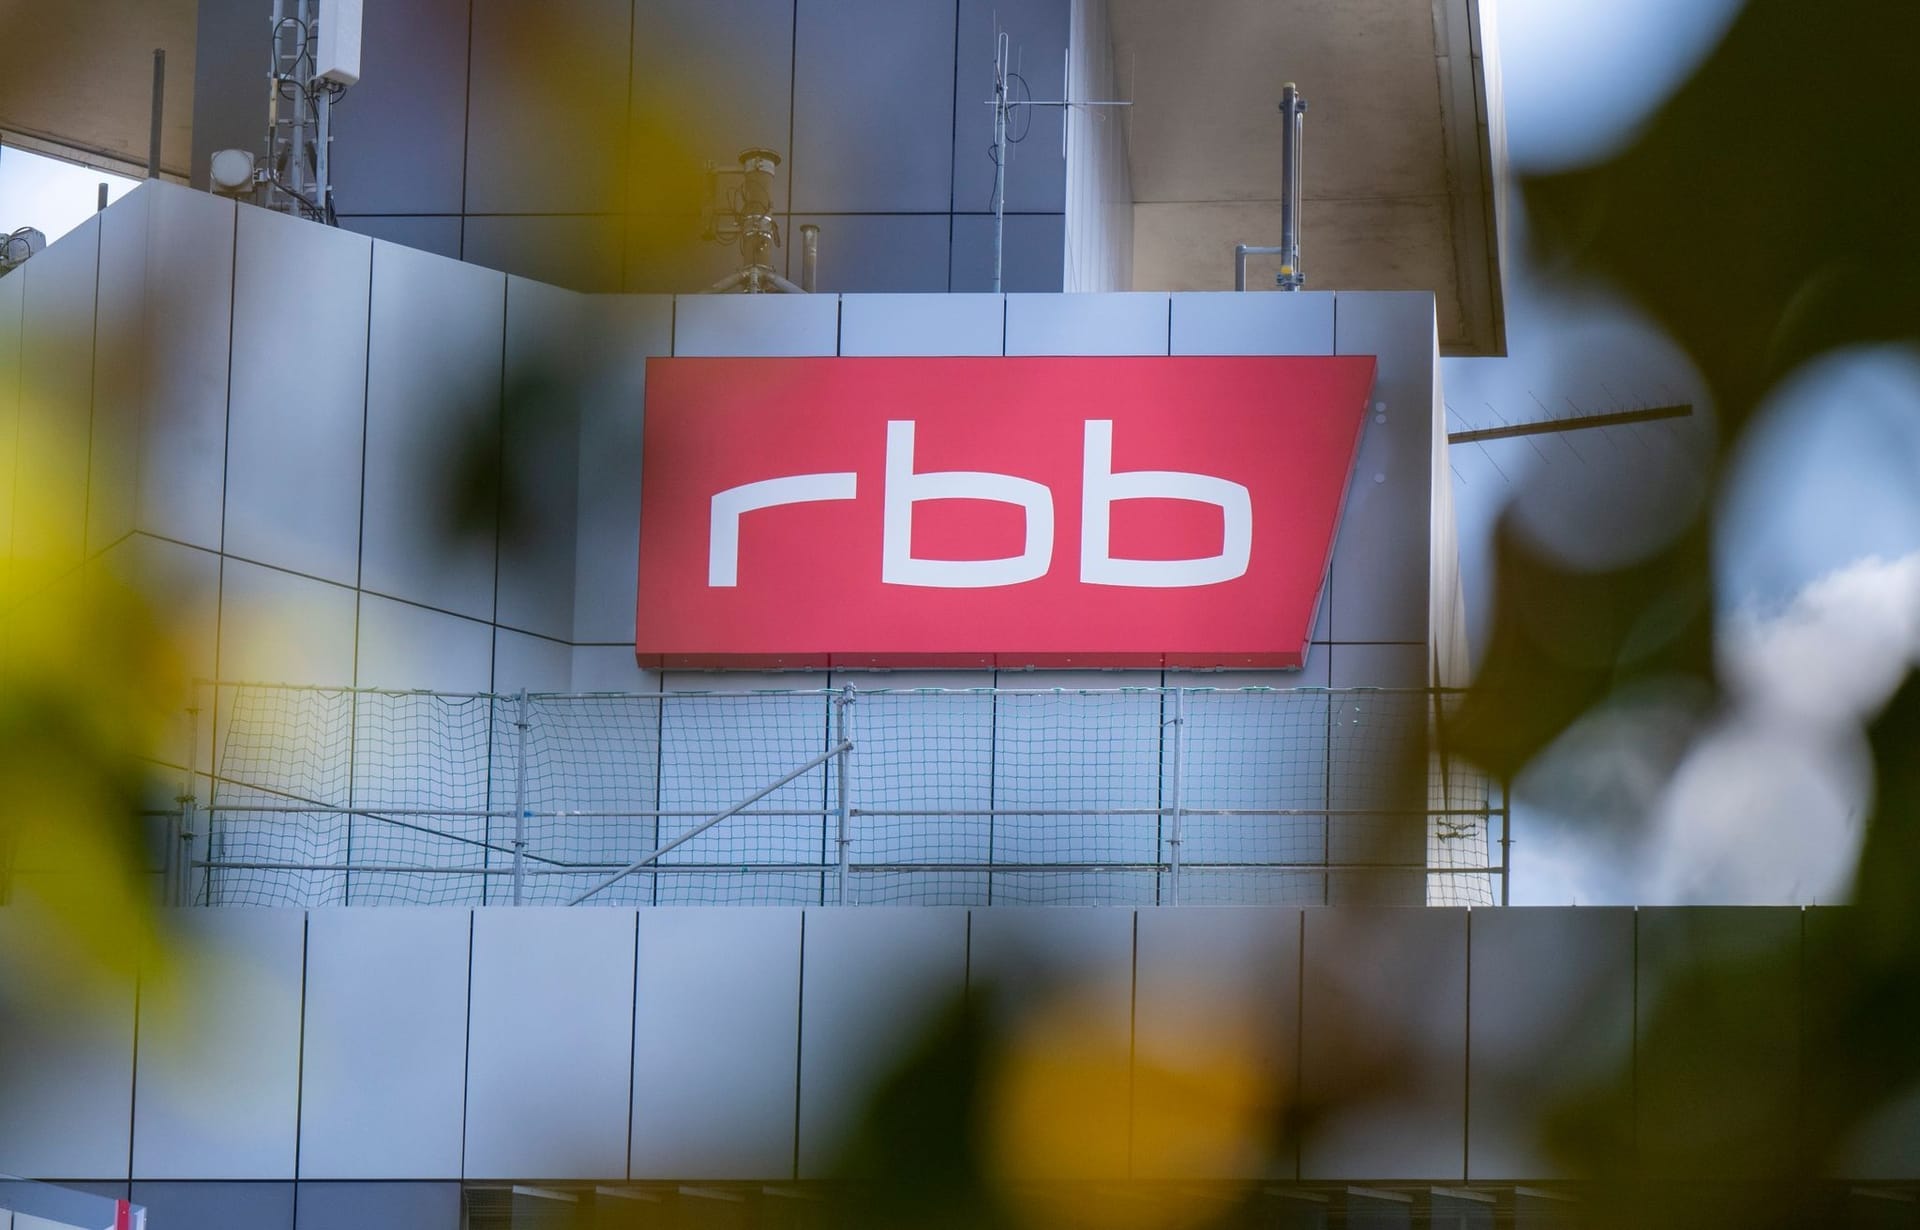 RBB-Gebäude (Archivbild): Mehr als eine halbe Million Euro soll der Umbau der Intendanz-Etage gekostet haben.